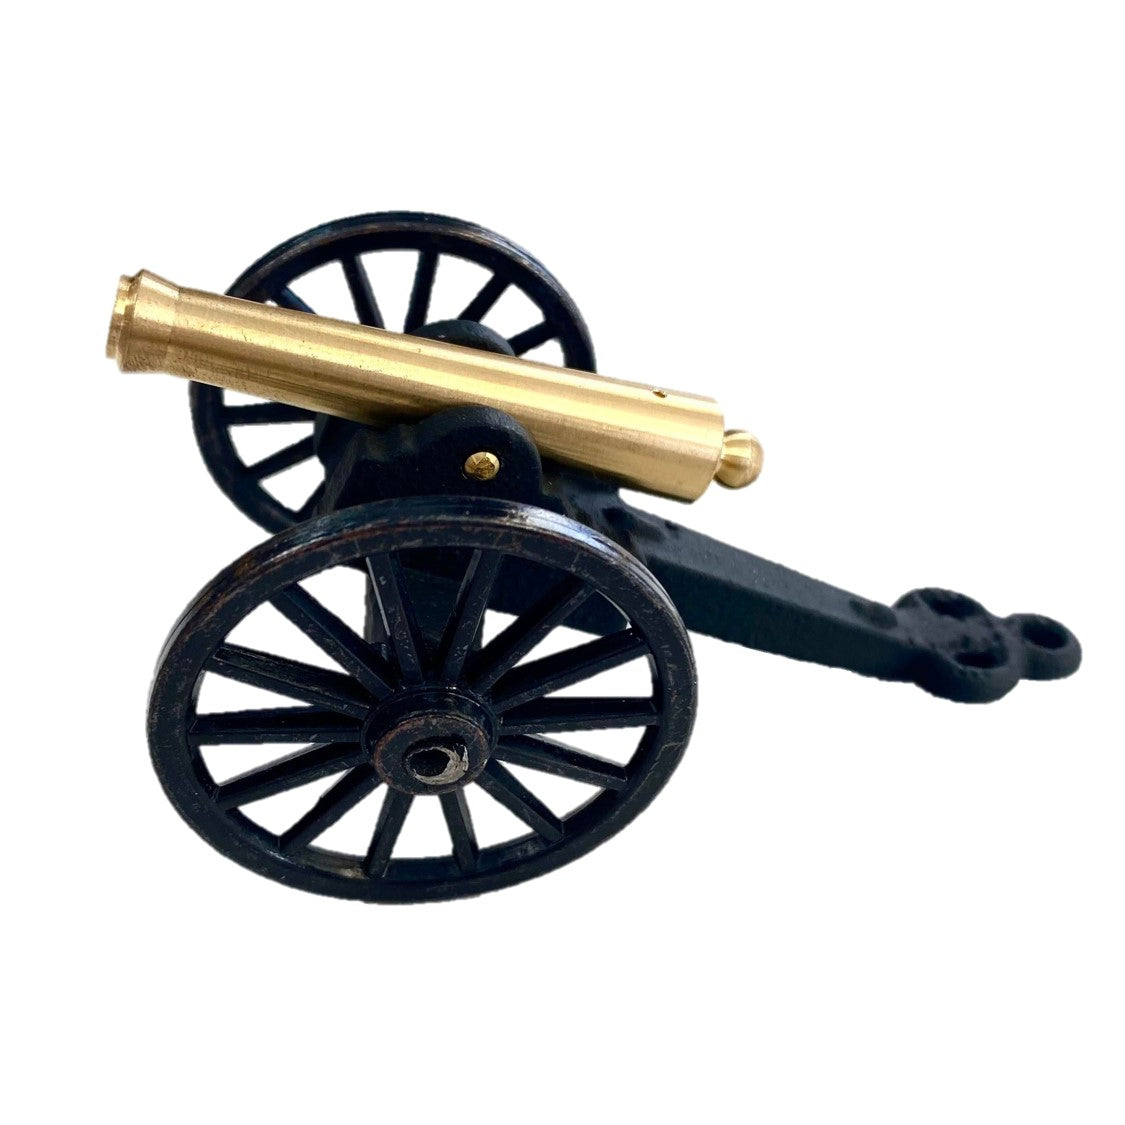 Cannon - Civil War 12lb. Napoleon Cannon (small)